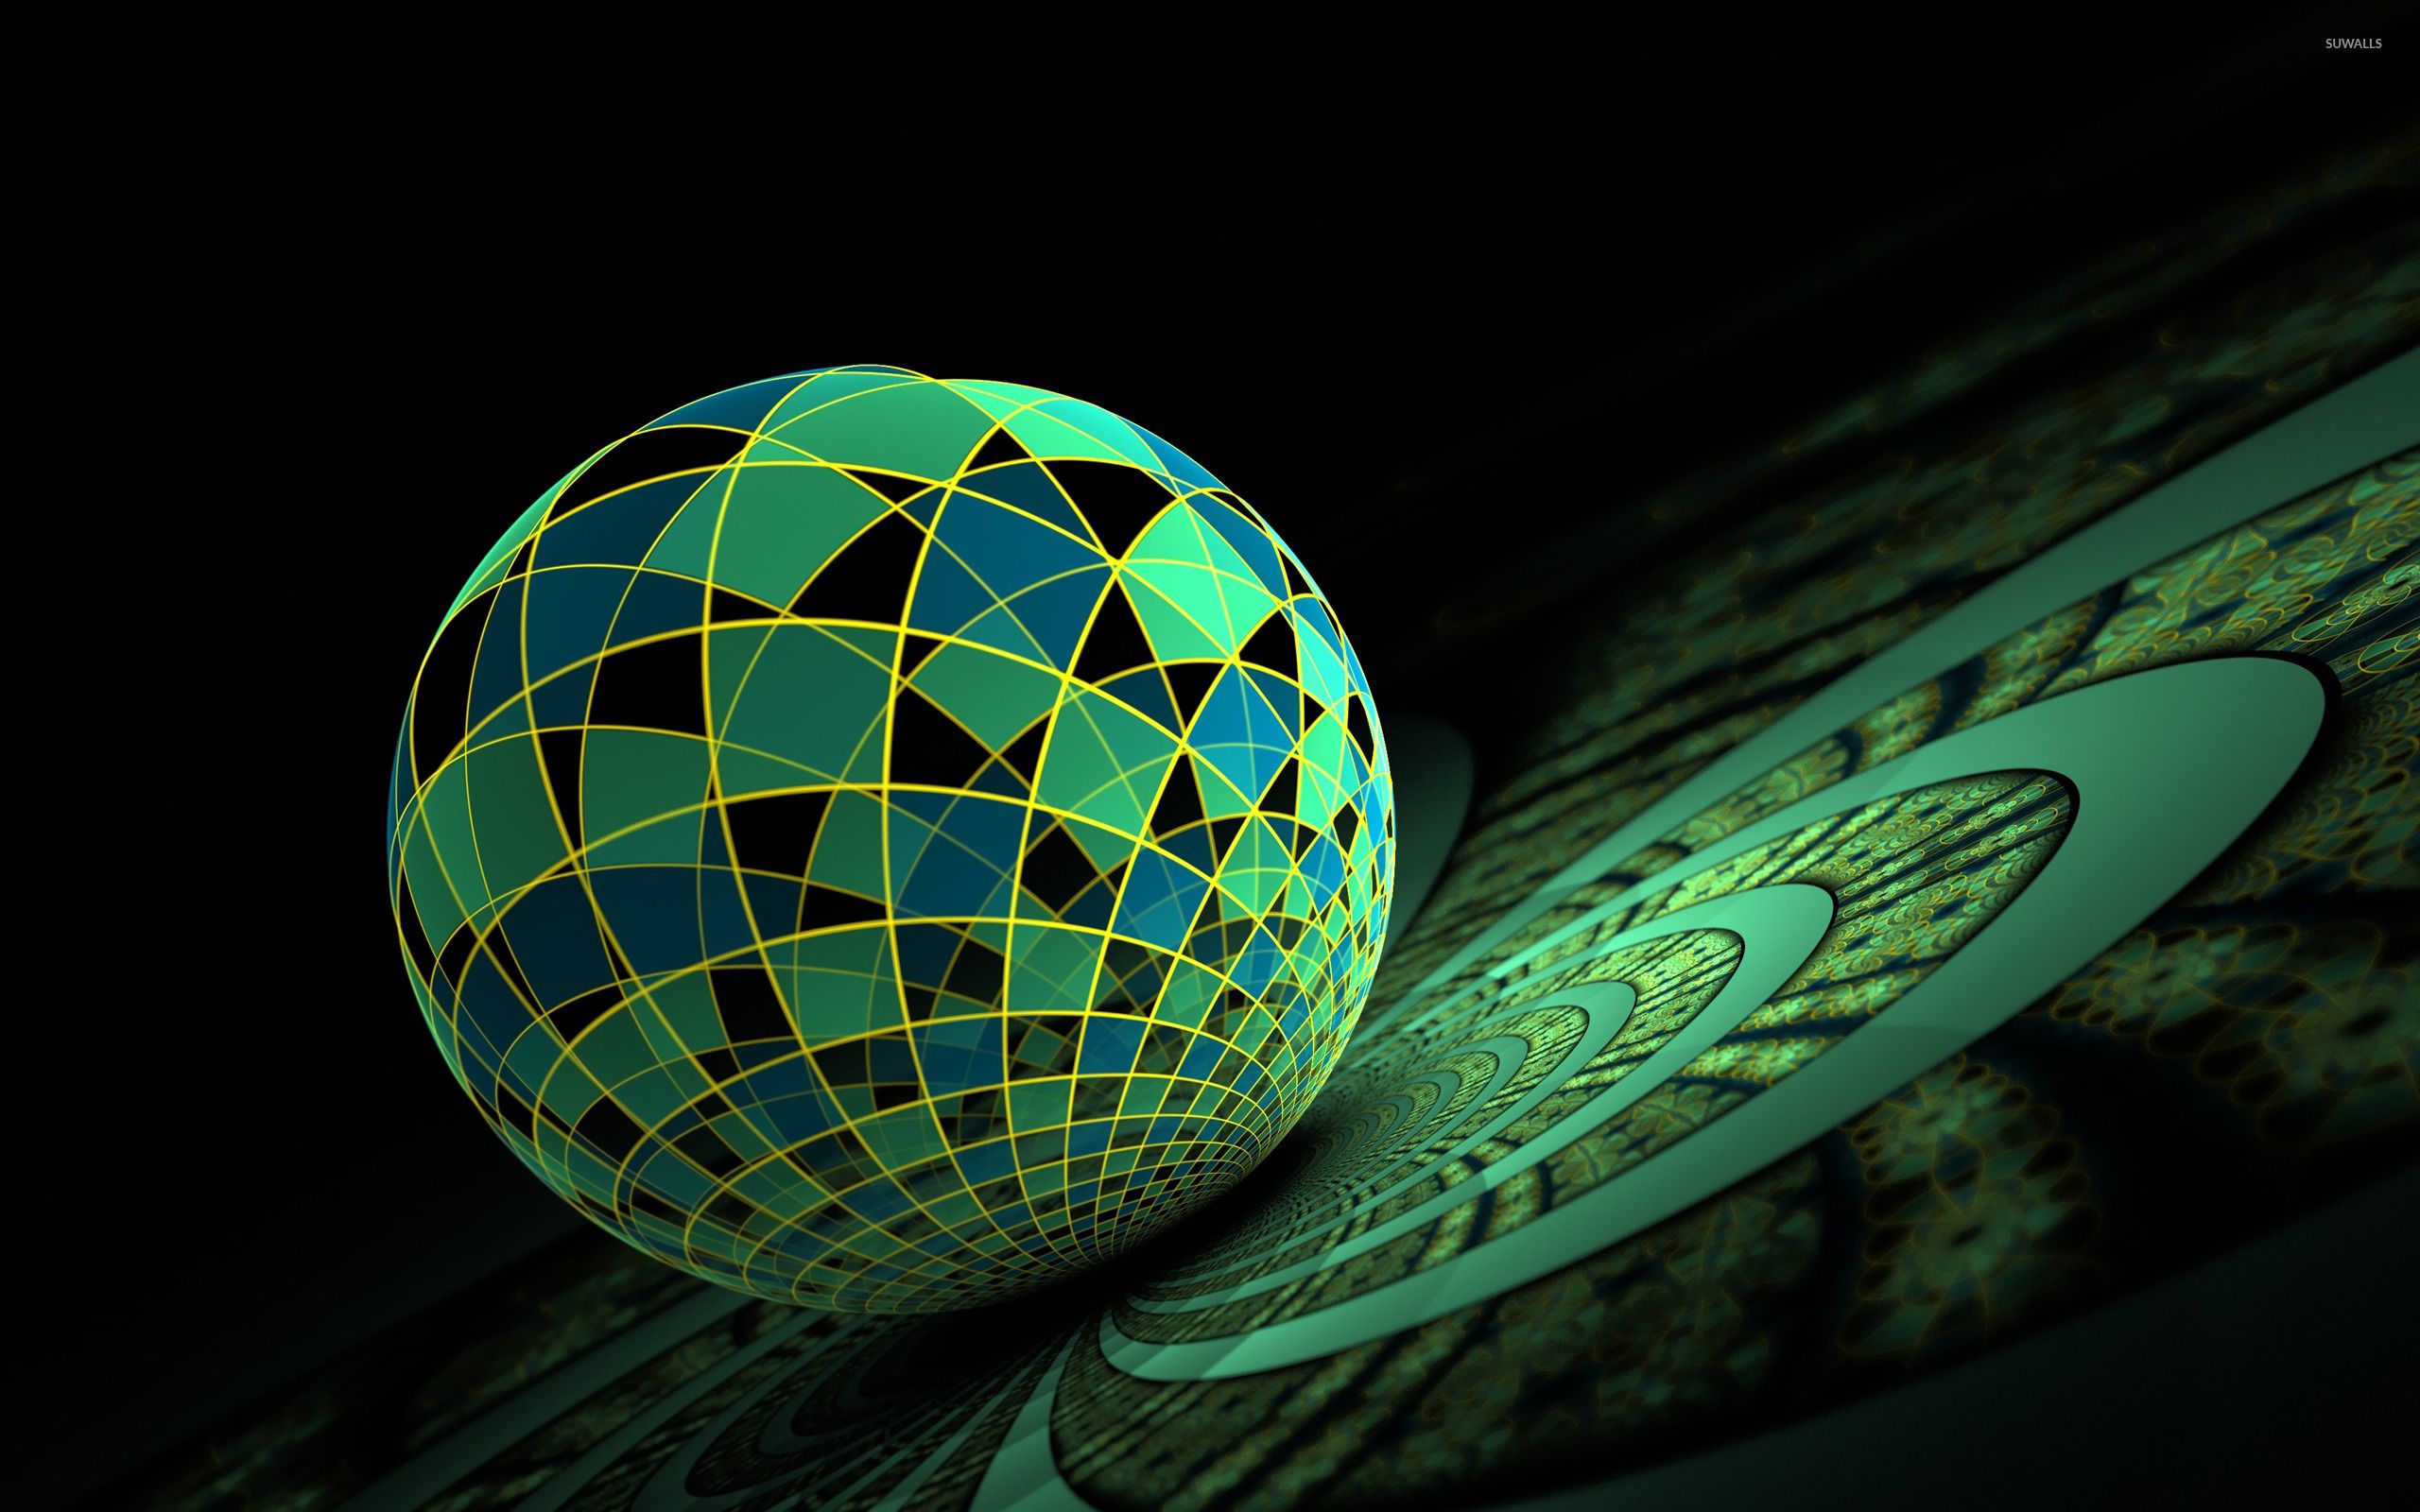 Dyson Sphere Digital Art Wallpapers